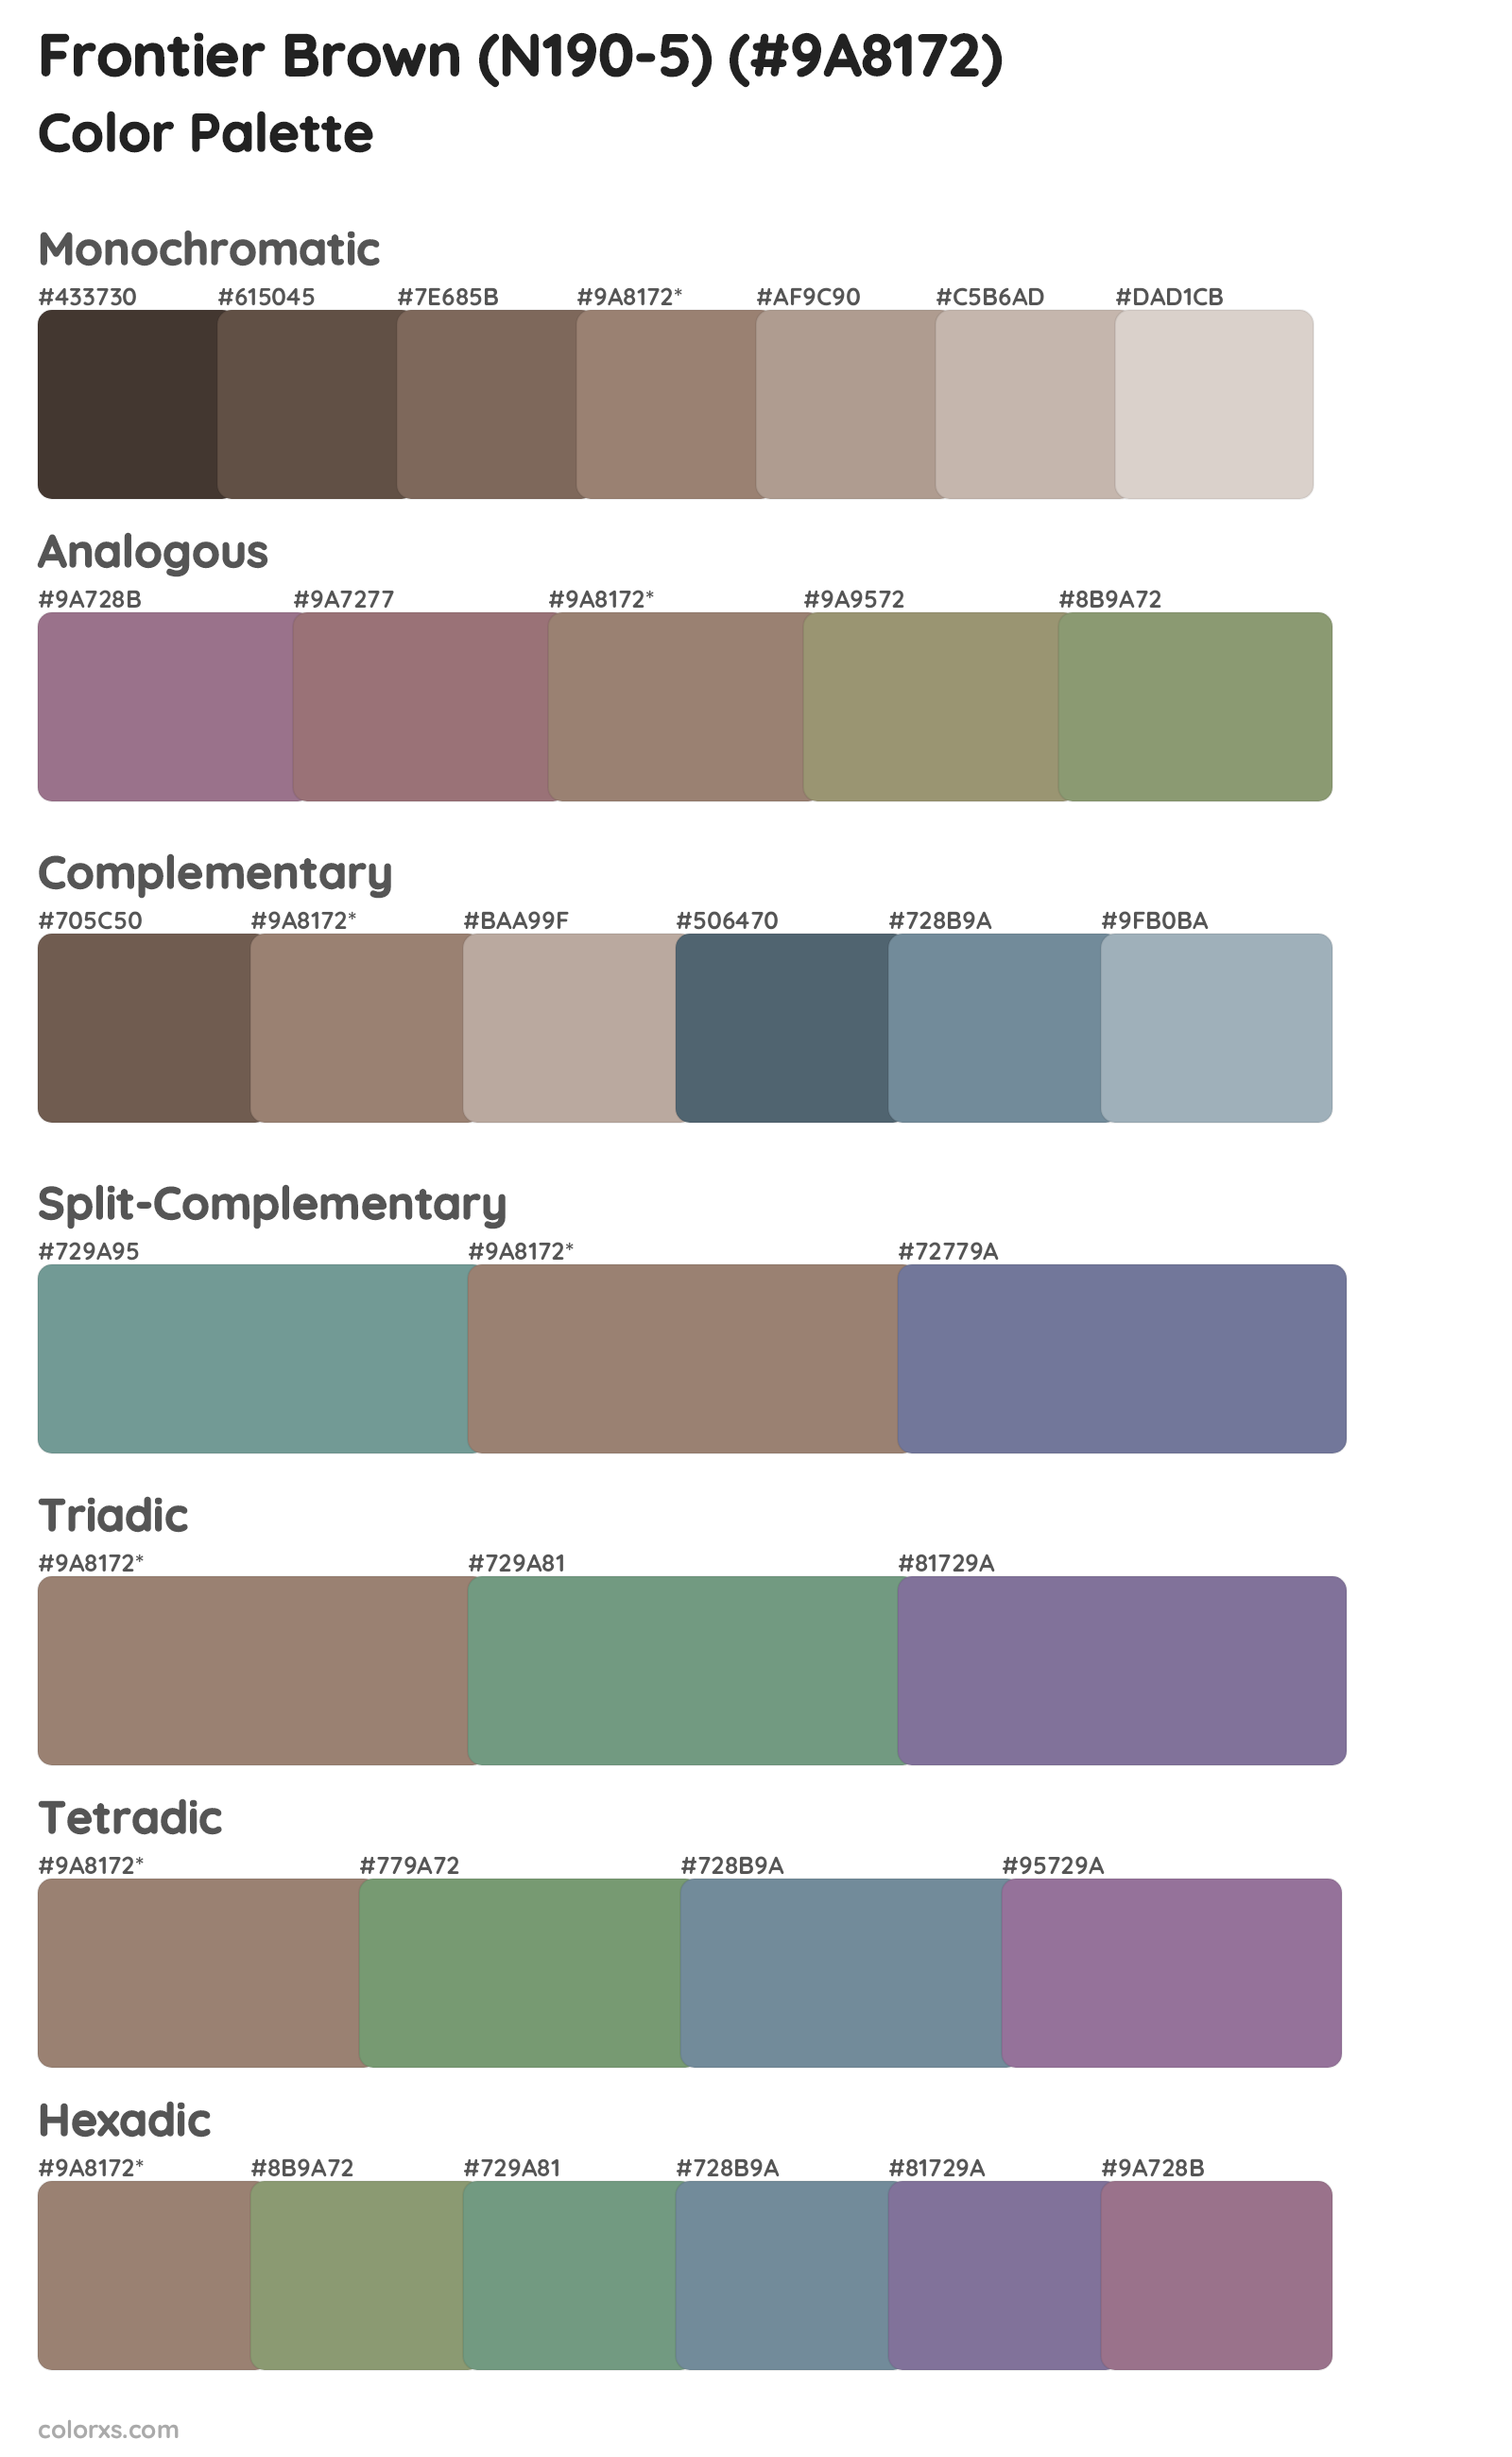 Frontier Brown (N190-5) Color Scheme Palettes